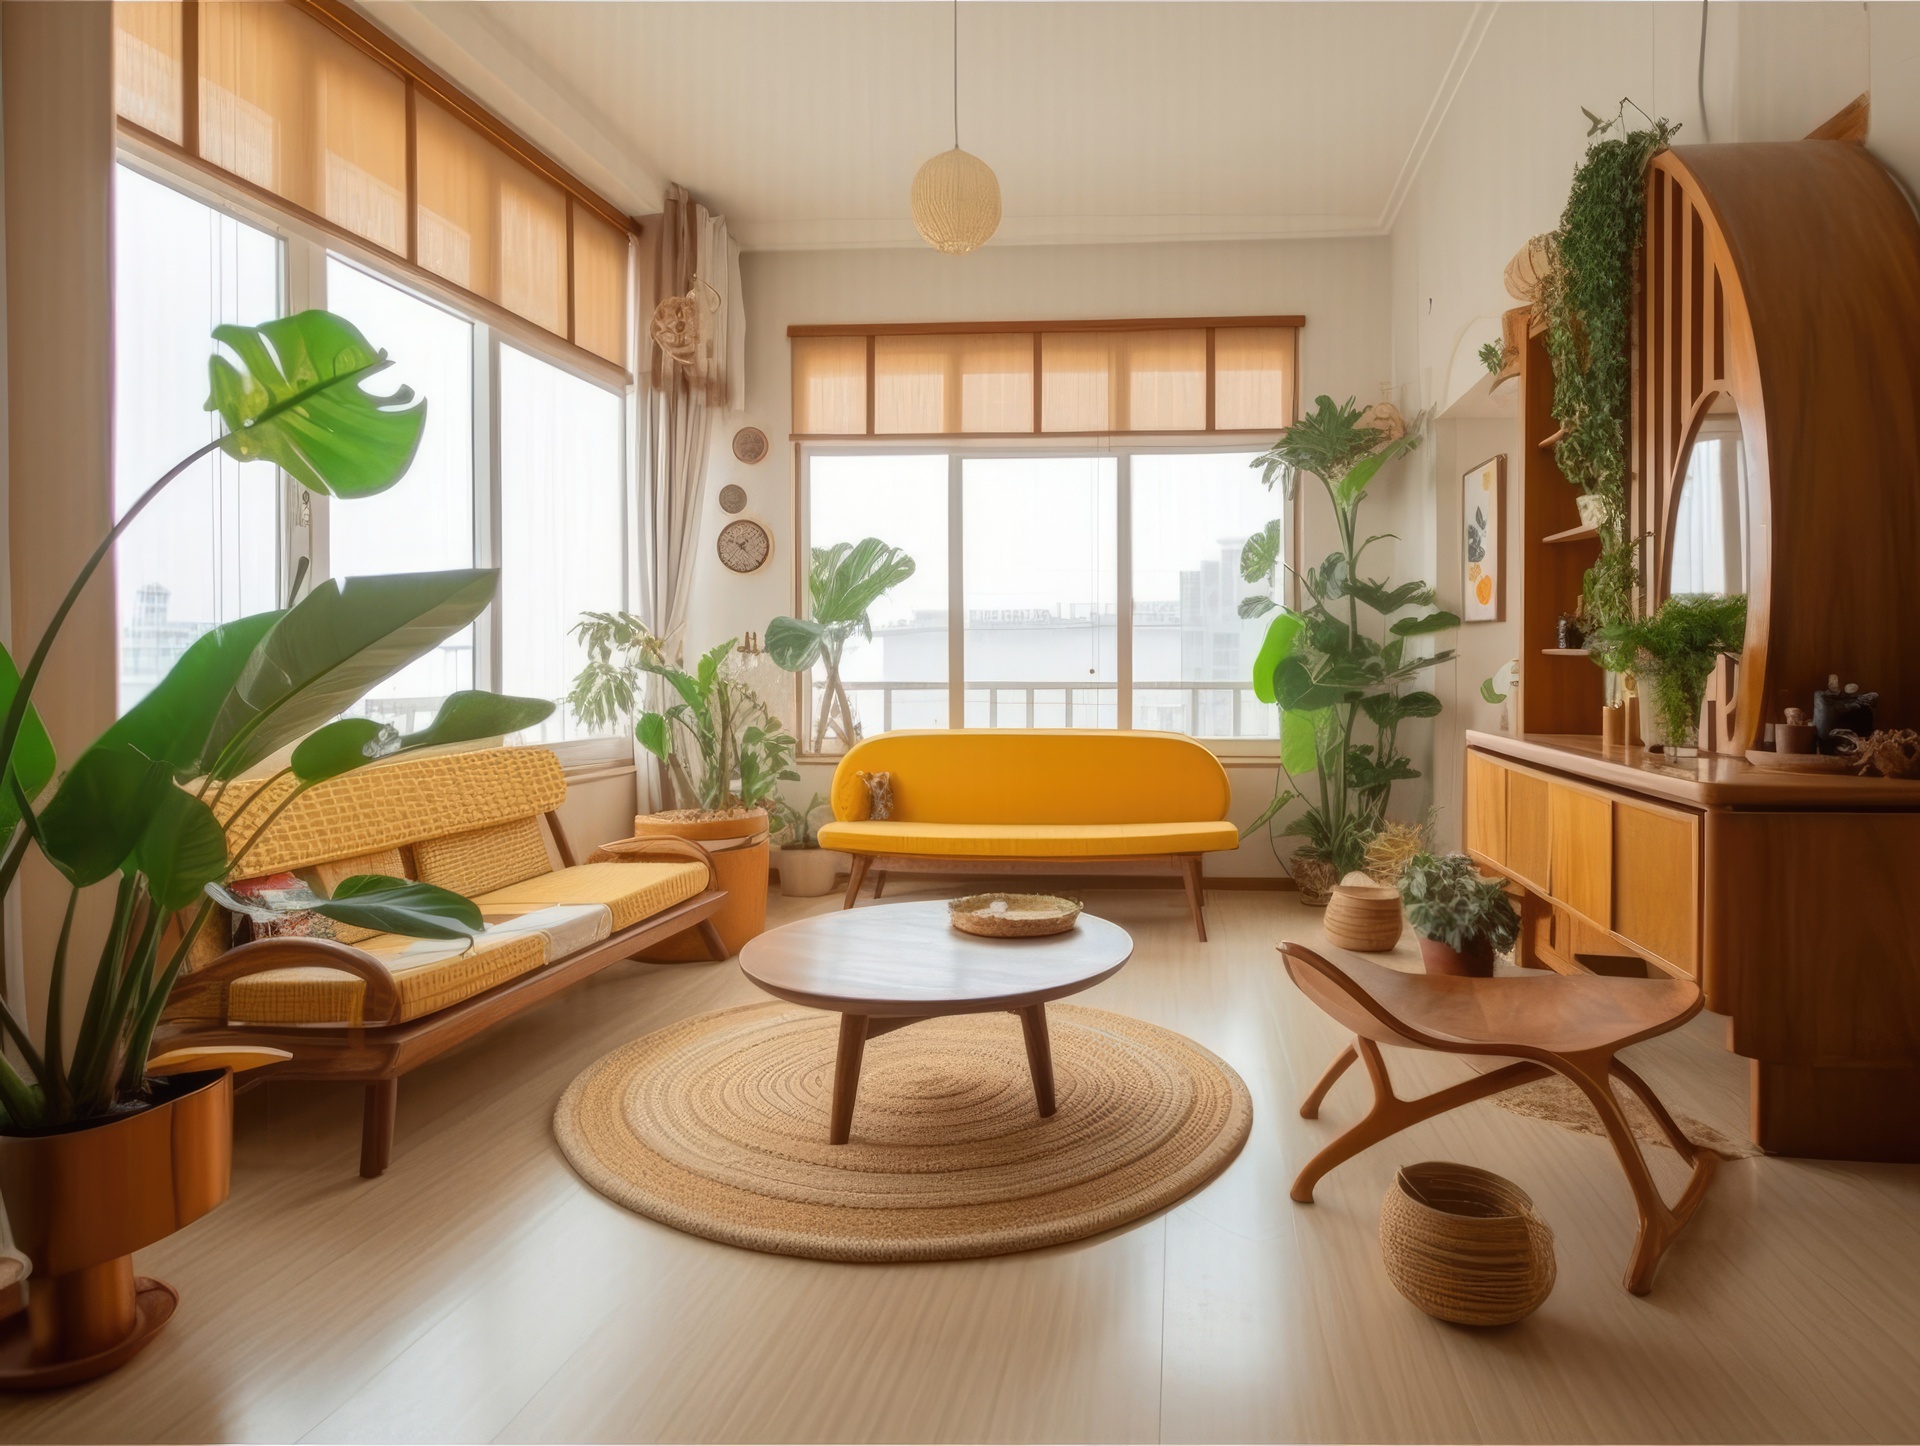 Na tym zdjęciu widzimy wnętrze domu urządzonego w stylu japońskim. Wnętrze jest minimalistyczne i harmonijne, a każdy element wnętrza ma swoje miejsce i cel. Na podłodze znajduje się tatami, a ściany są pokryte shoji - tradycyjnymi drzwiami przesuwnymi z papieru ryżowego. W pomieszczeniu znajdują się niskie meble - takie jak stolik kawowy i poduszki z ziarna gryki - oraz rośliny, które dodają wnętrzu naturalnego klimatu. Całość tworzy spójną i harmonijną aranżację, która sprawia, że wnętrze wygląda oryginalnie i nowocześnie, a jednocześnie emanuje spokojem i harmonią.